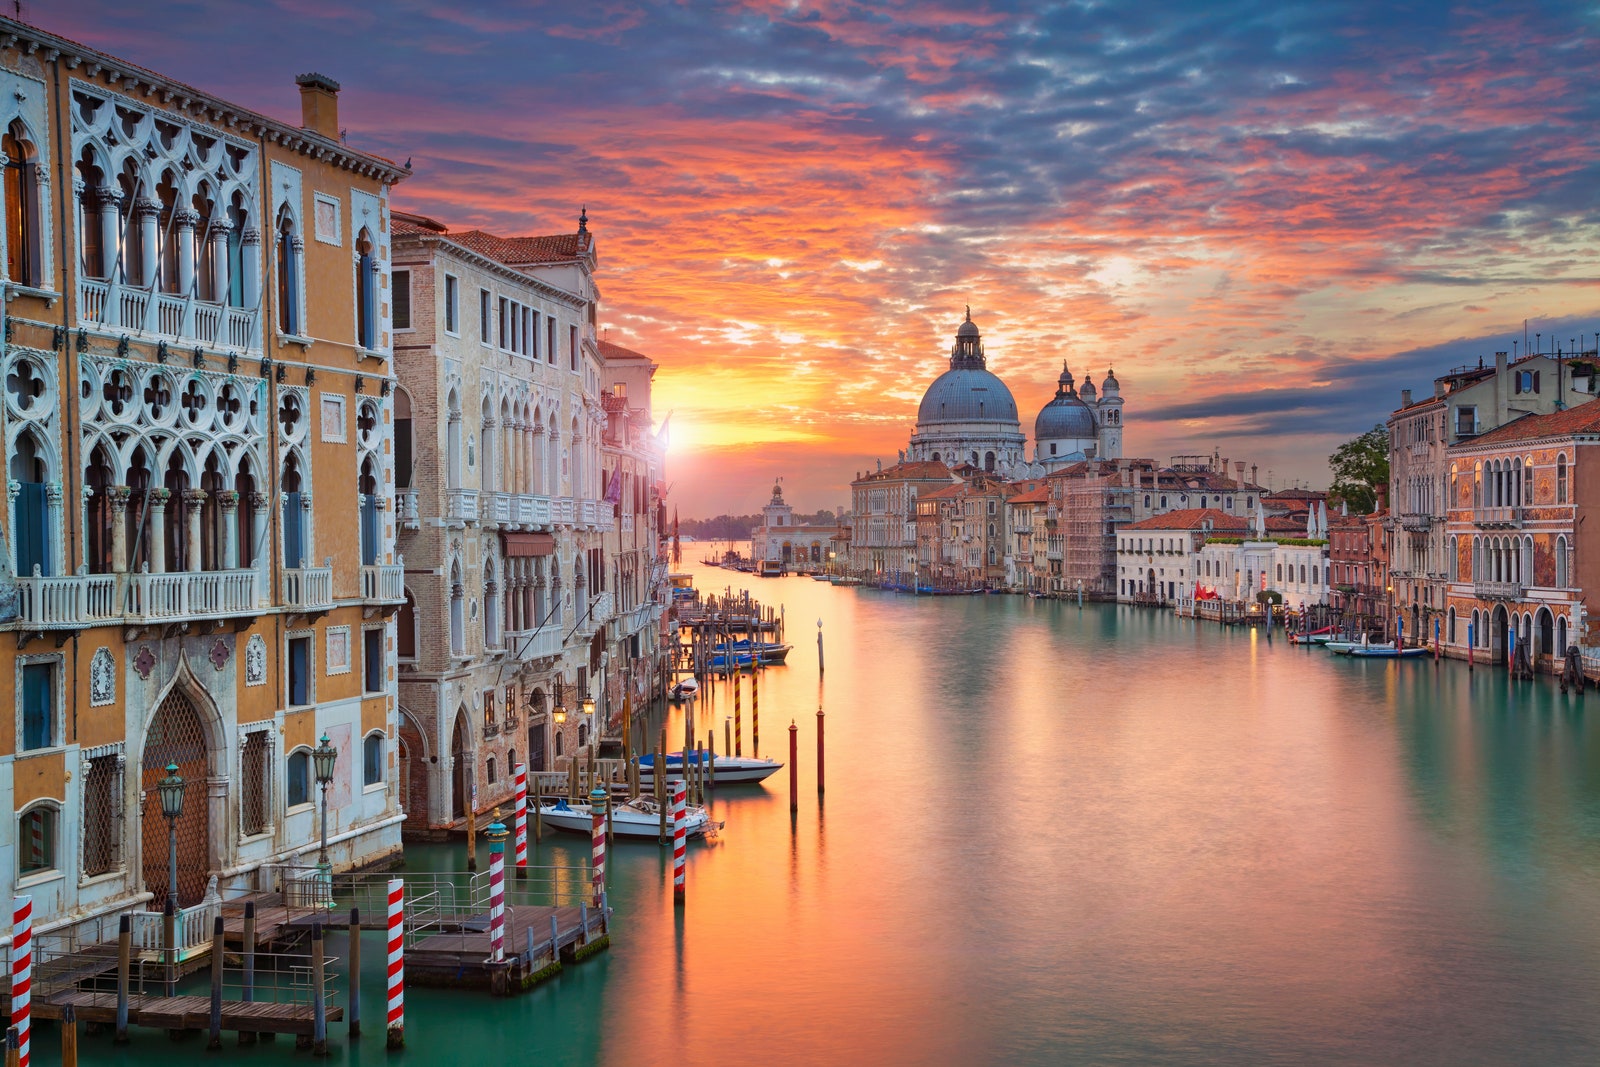 Путешественникам на заметку с 2020 года за въезд в исторический центр Венеции будет взиматься плата